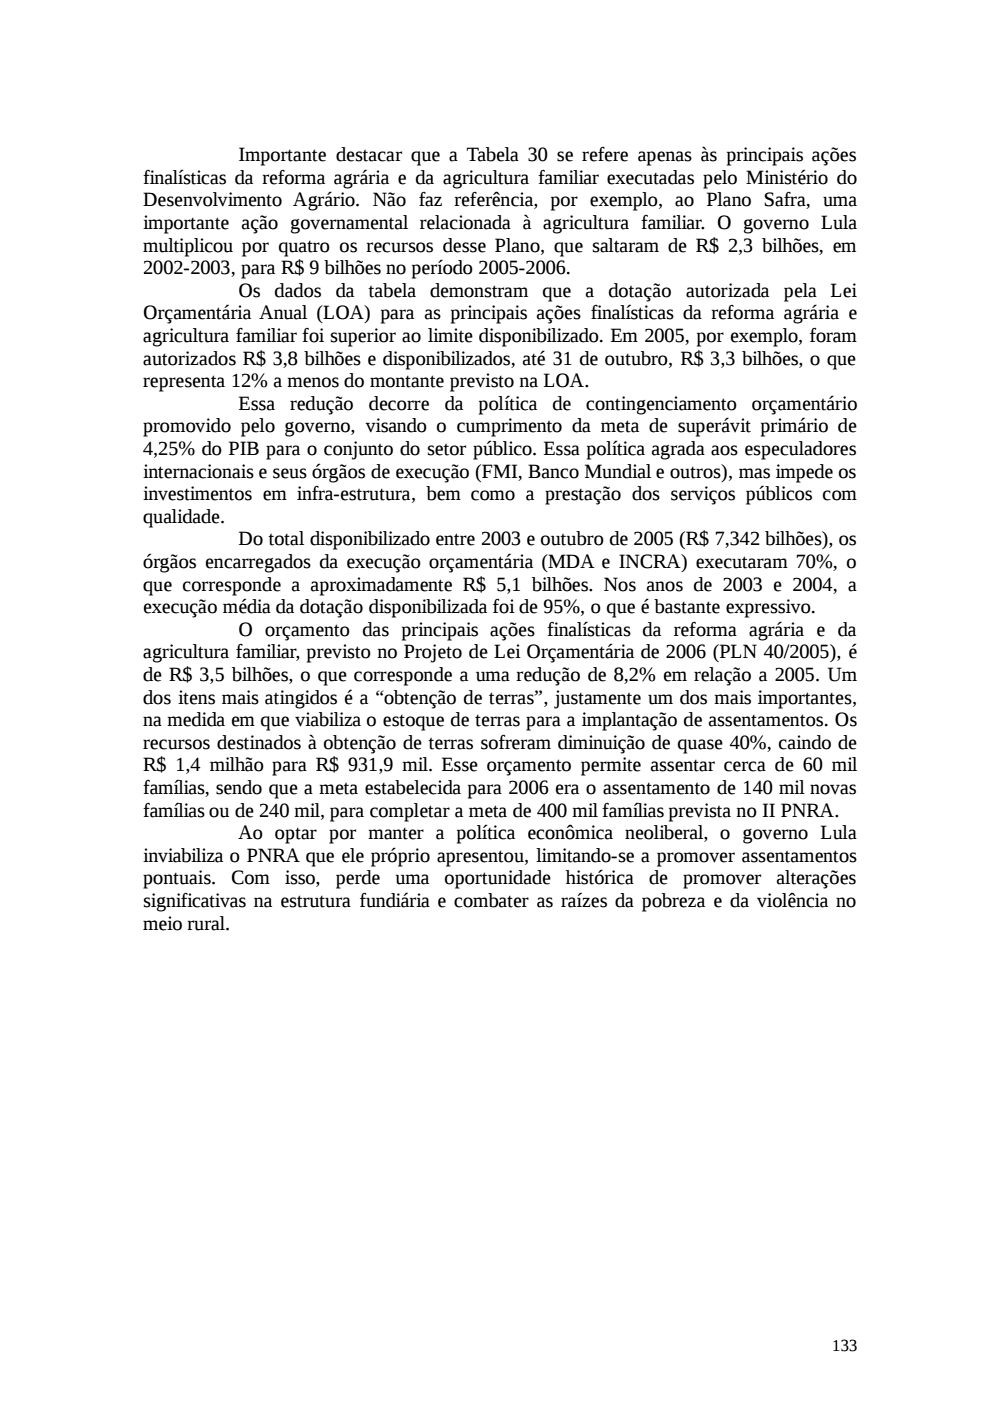 Page 133 from Relatório final da comissão